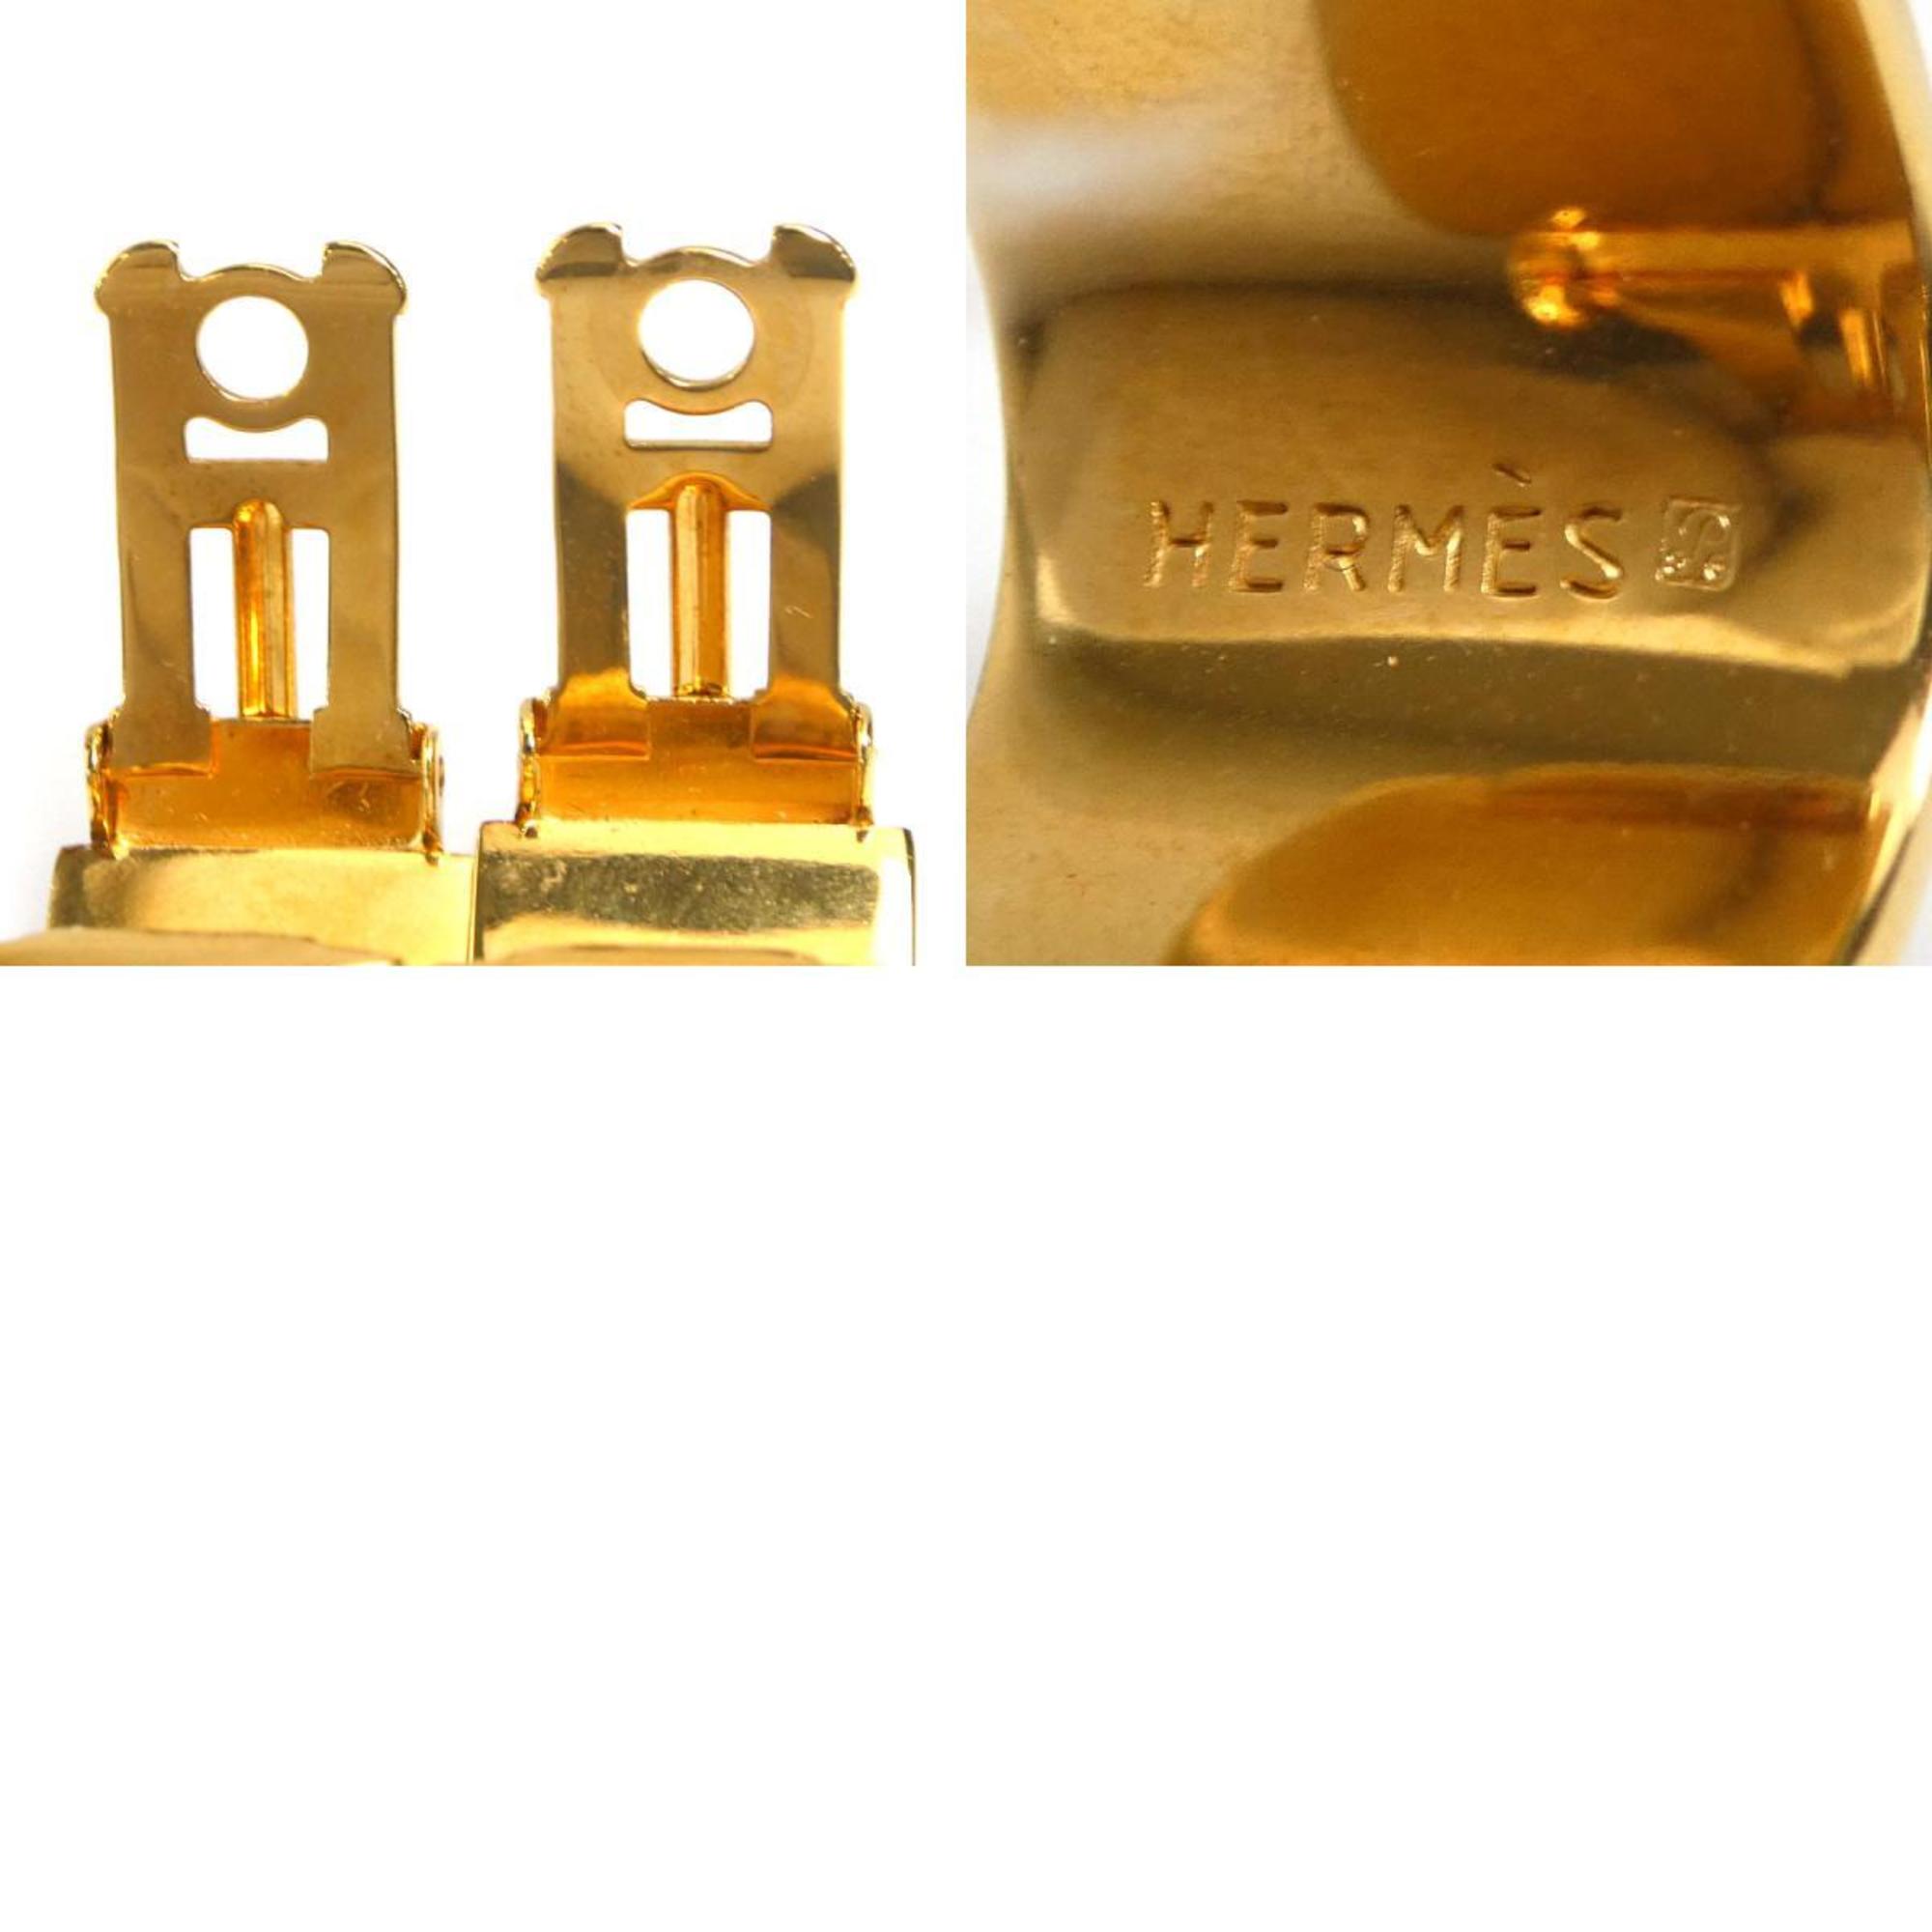 Hermes HERMES earrings cloisonné metal/enamel gold/navy women's e58576g